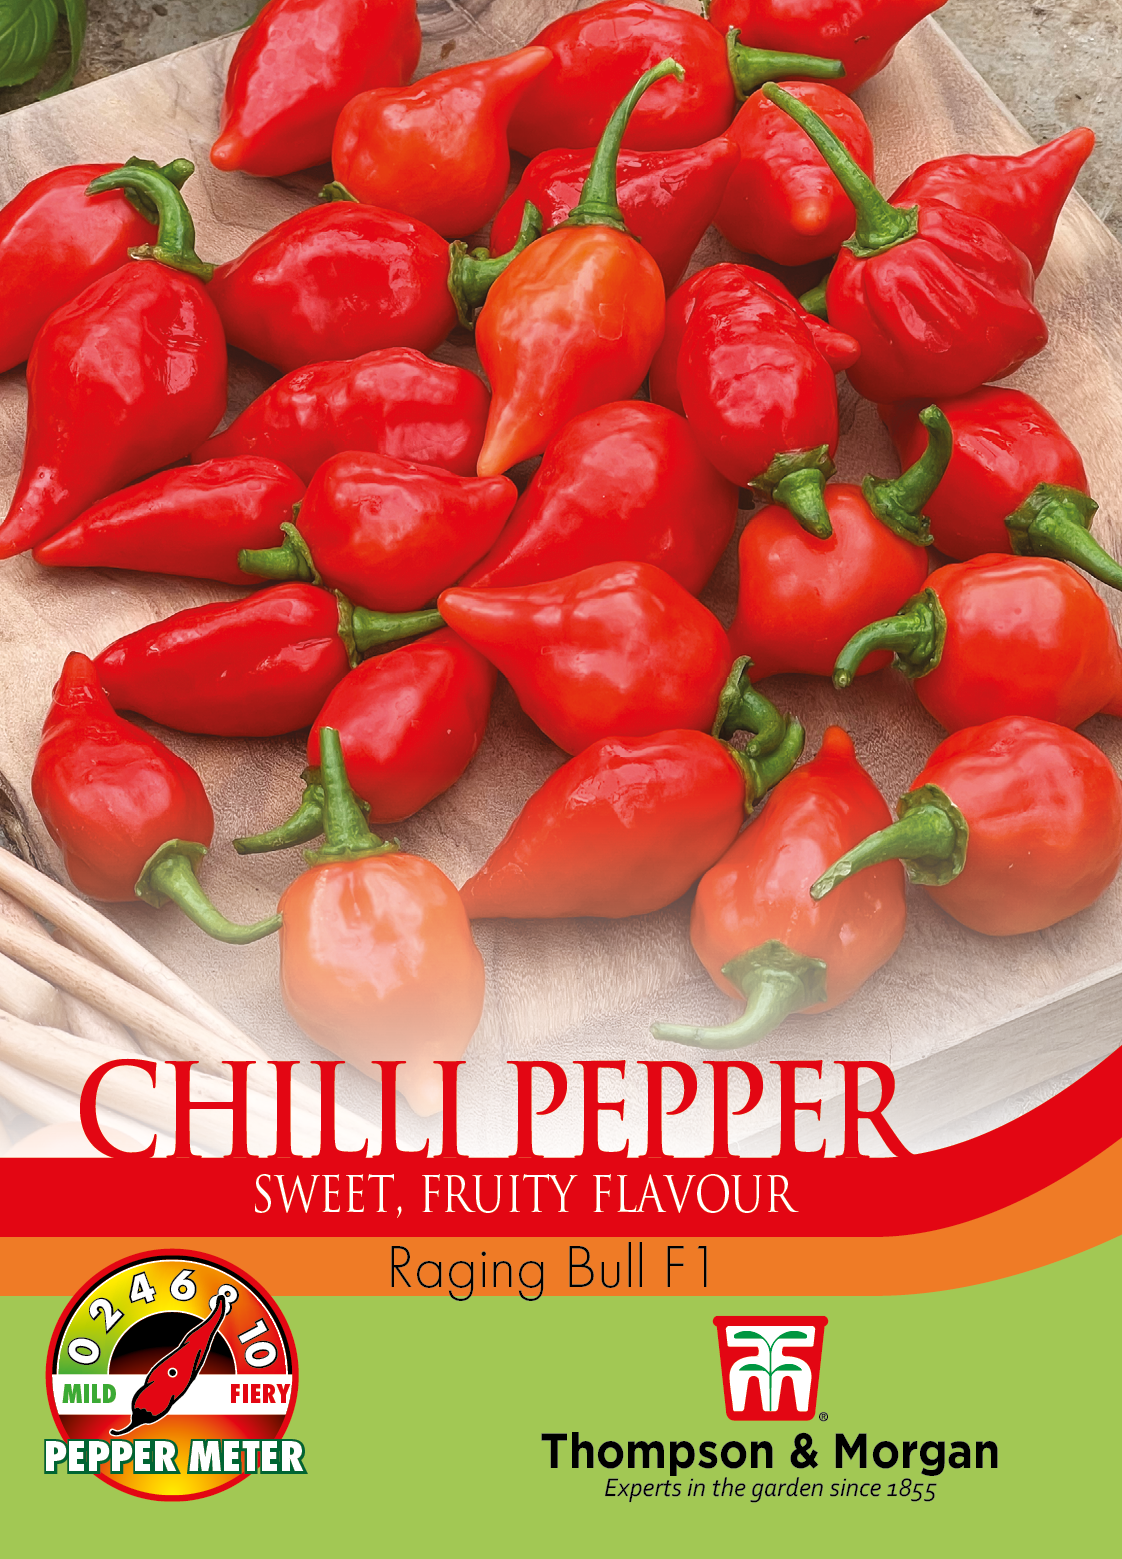 Chilli Pepper Raging Bull